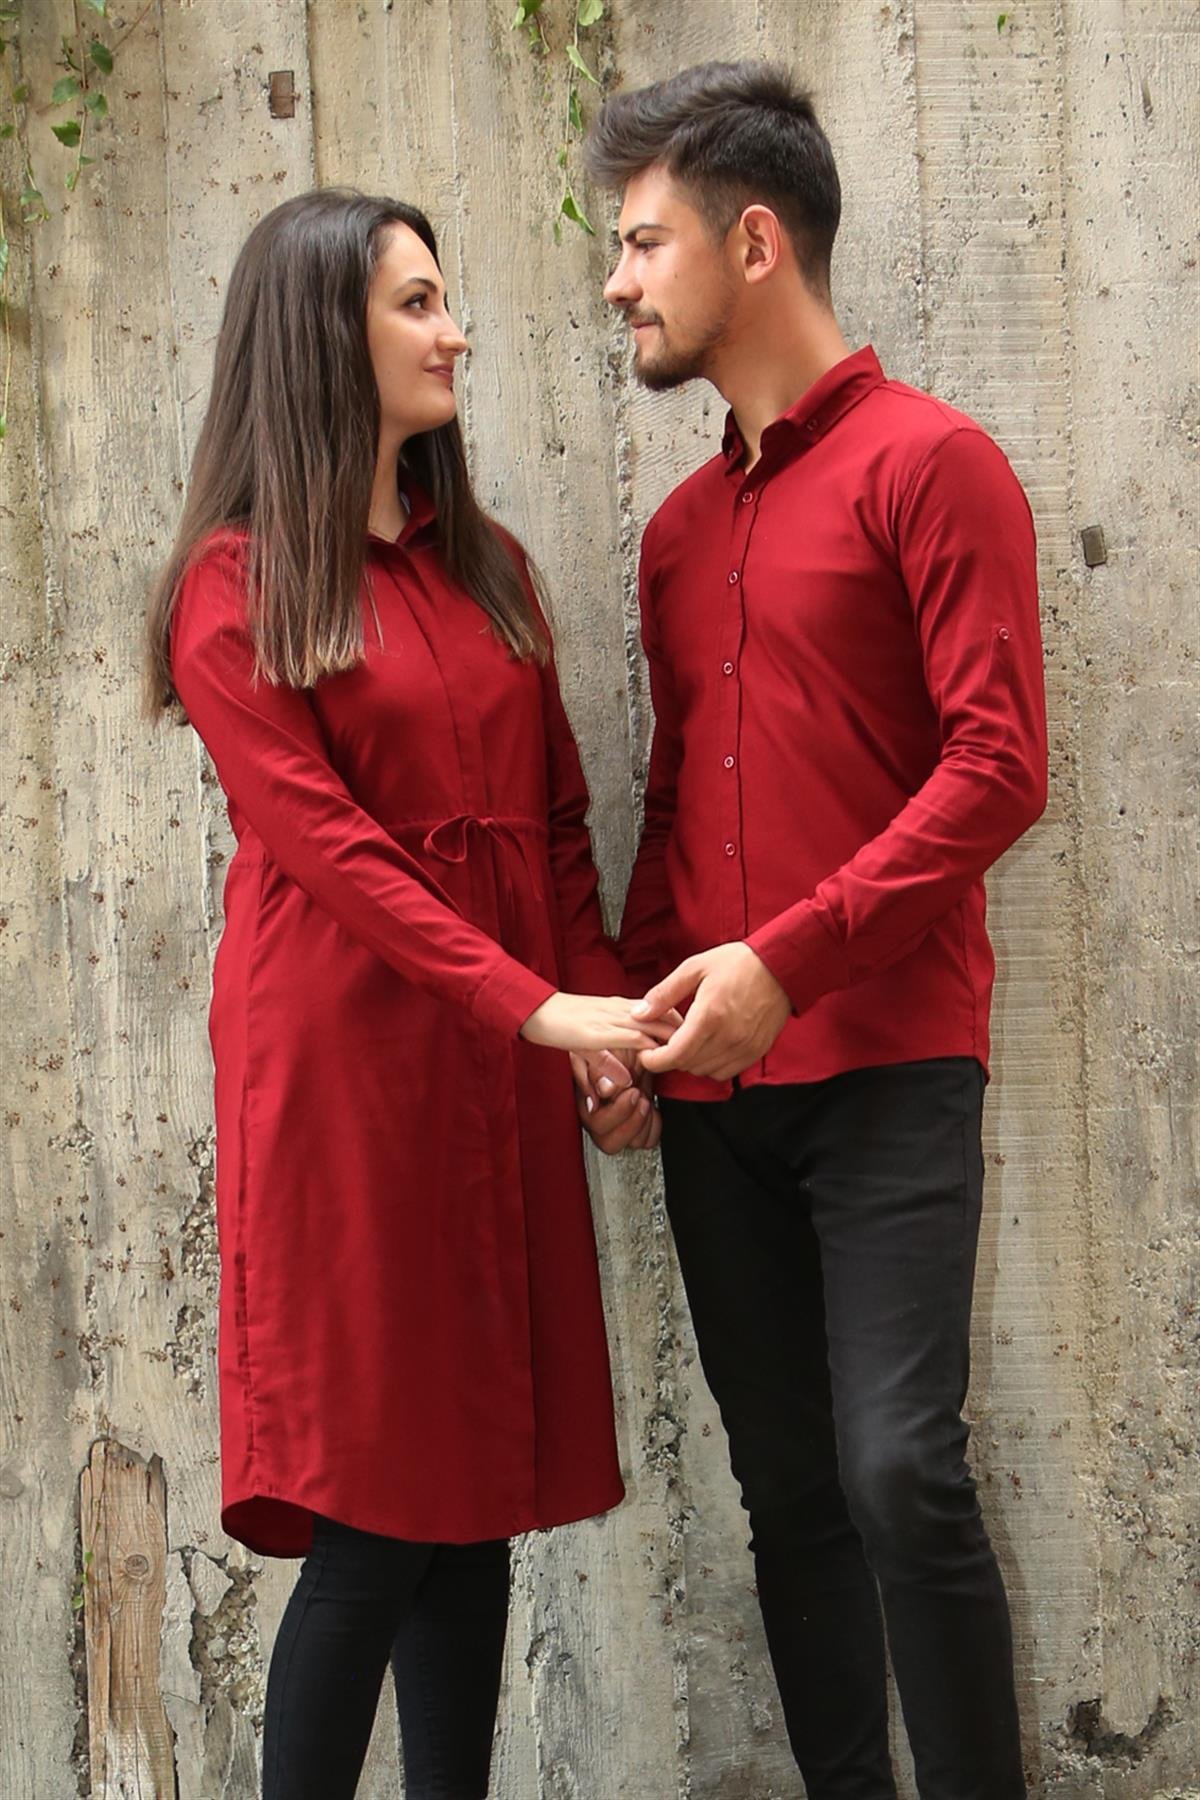 Armürlü Bengalin Düz Likralı Bordo Tesettür Gömlek Sevgili Kombini  giygit.com | Bay ve Bayan Giyim ve Sevgili Kombinleri